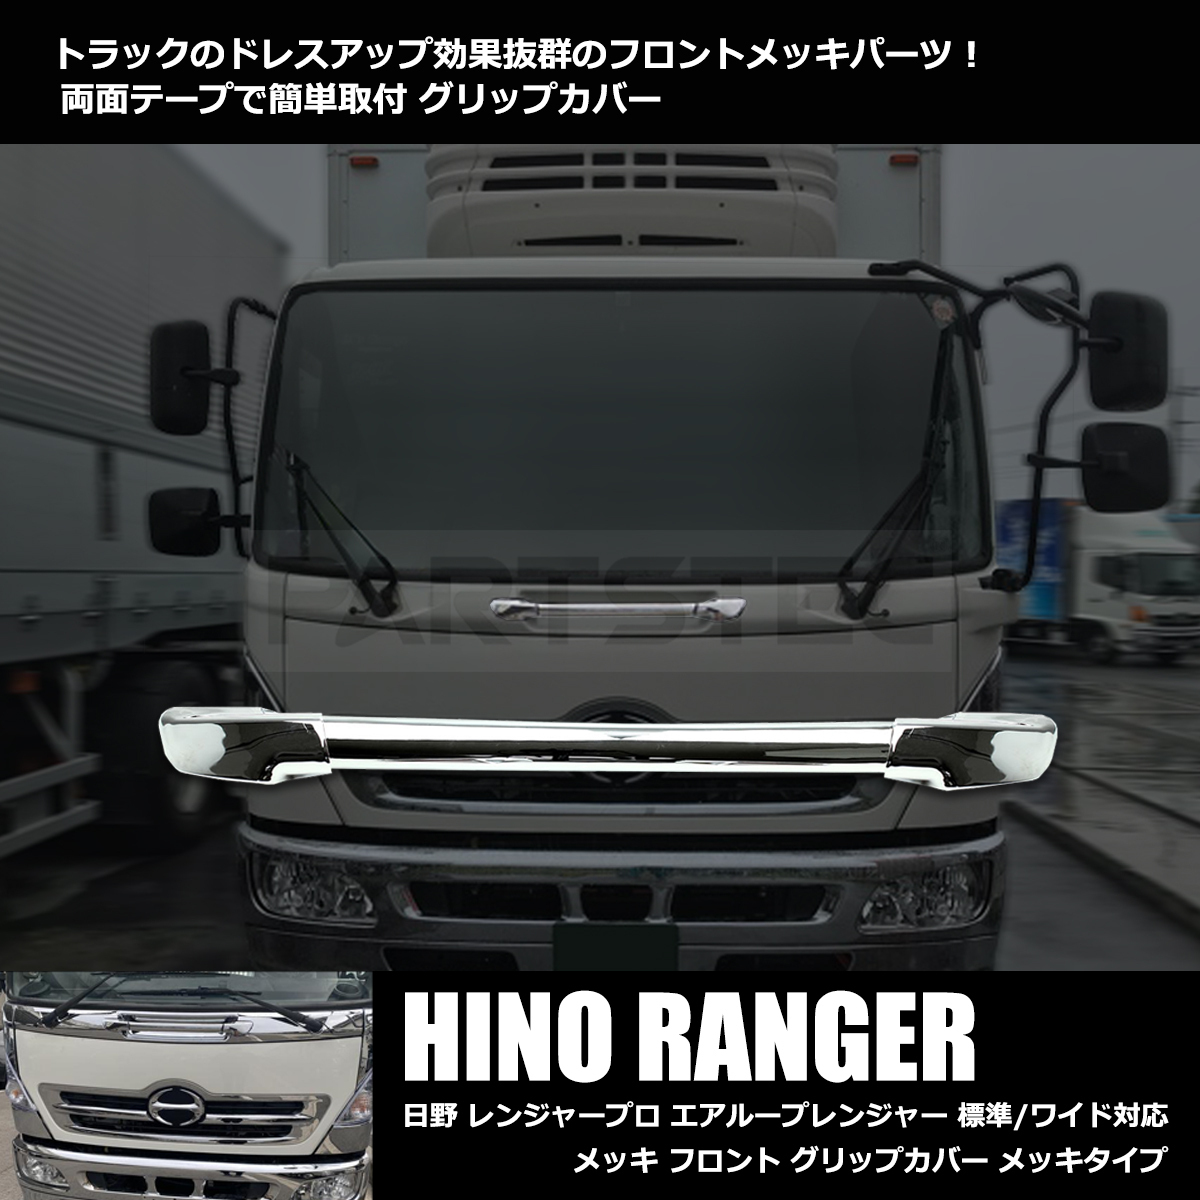  Hino Ranger Pro воздушный петля Ranger металлизированный передний рукоятка покрытие стандарт / широкий соответствует H14.1~H29.4 / 149-42 M-2